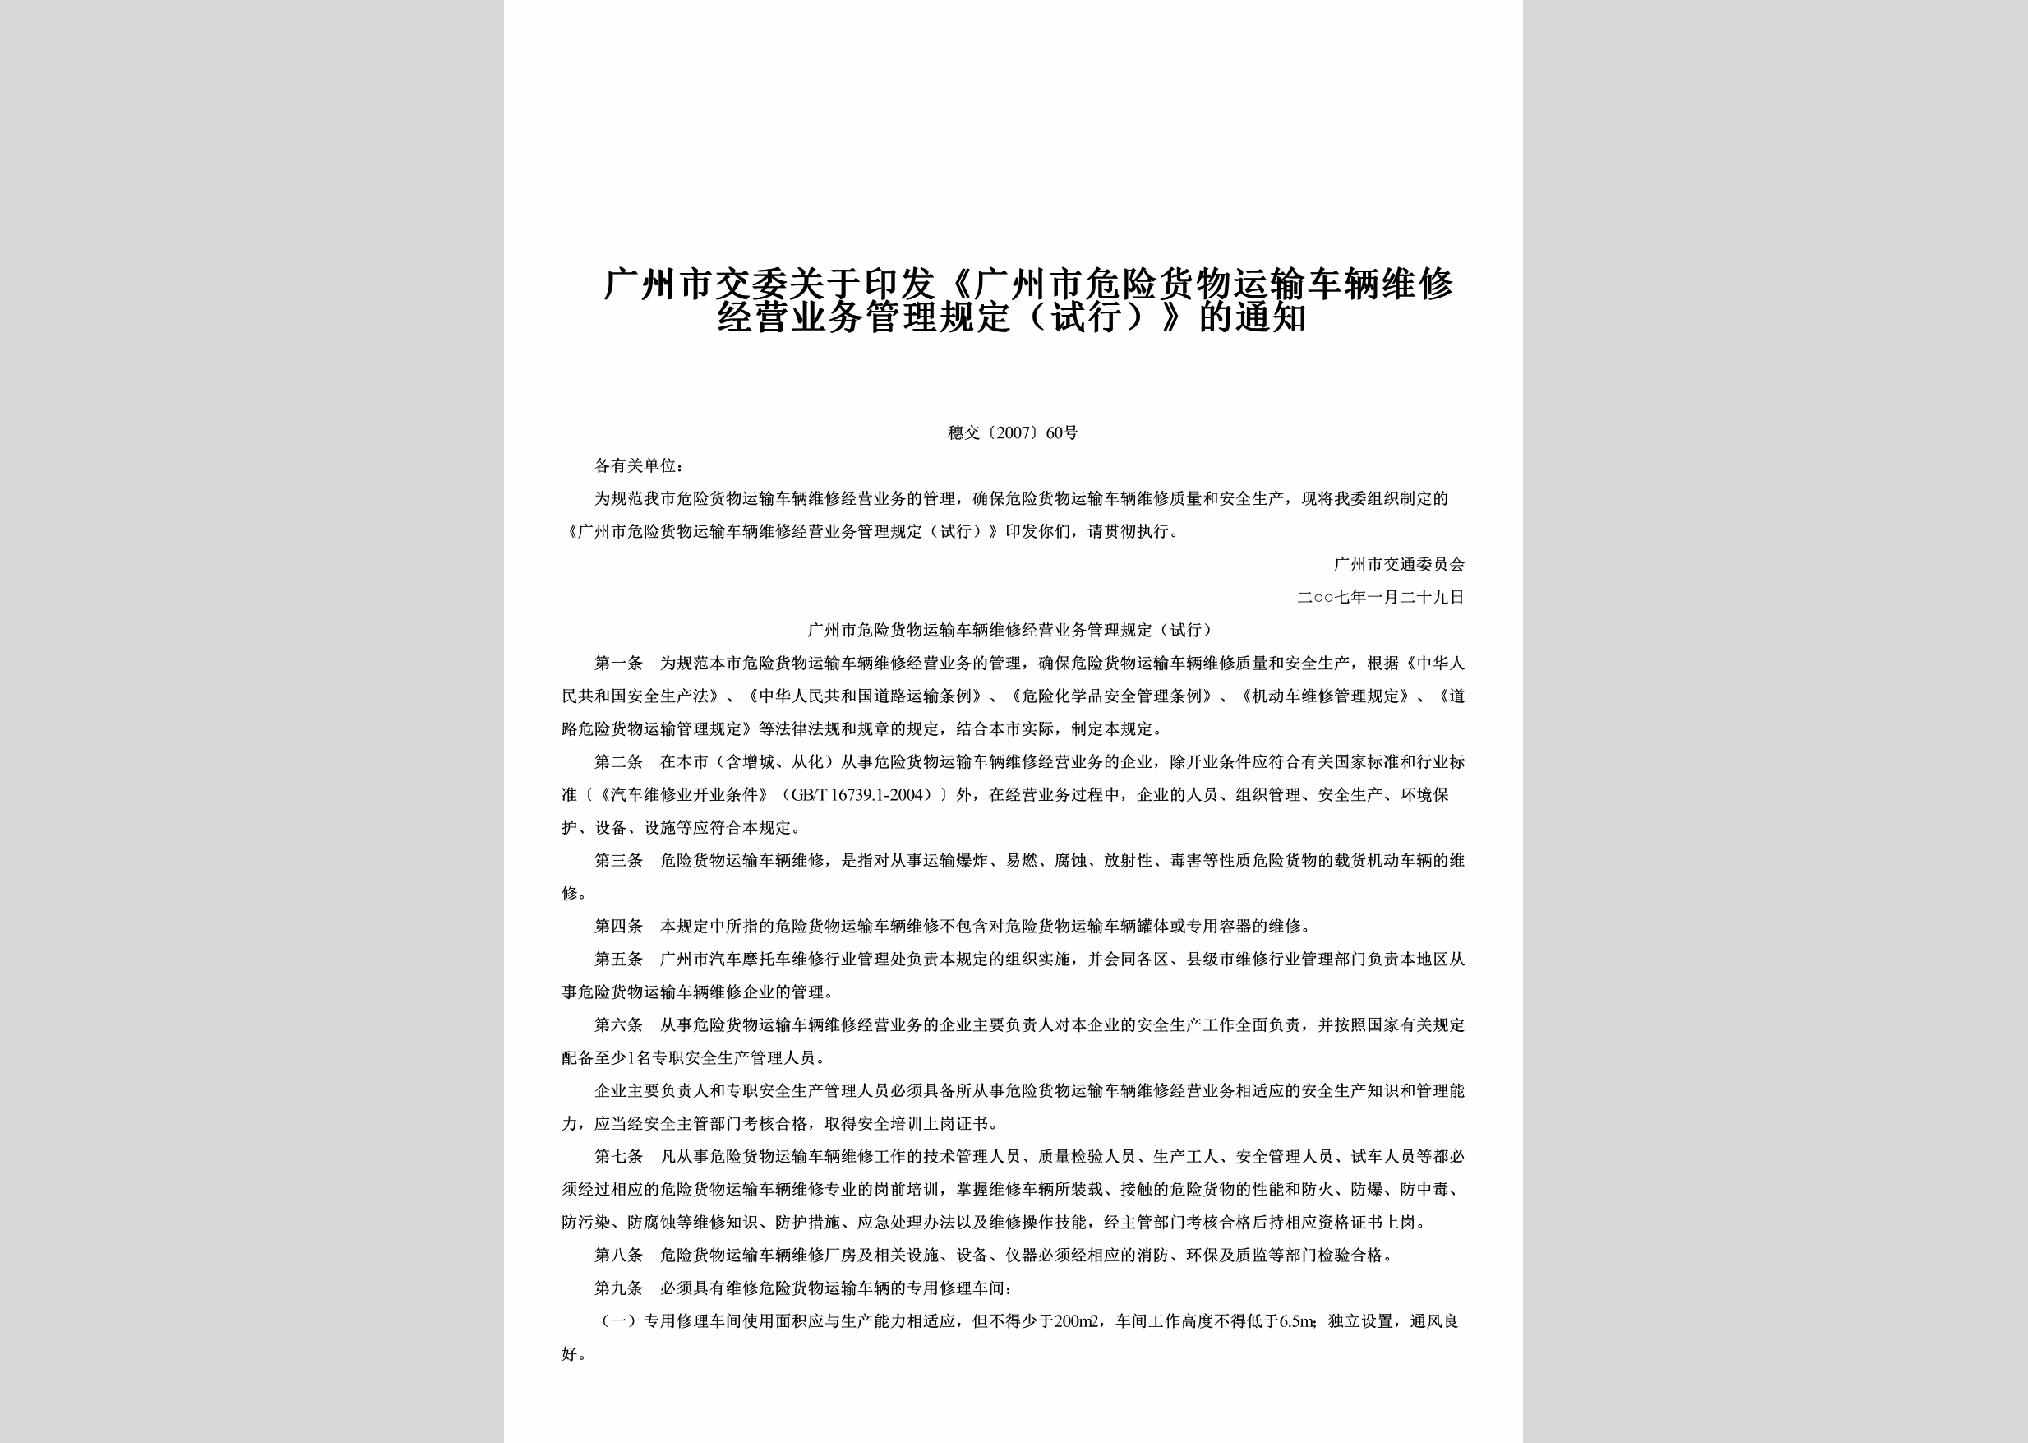 穗交[2007]60号：关于印发《广州市危险货物运输车辆维修经营业务管理规定（试行）》的通知